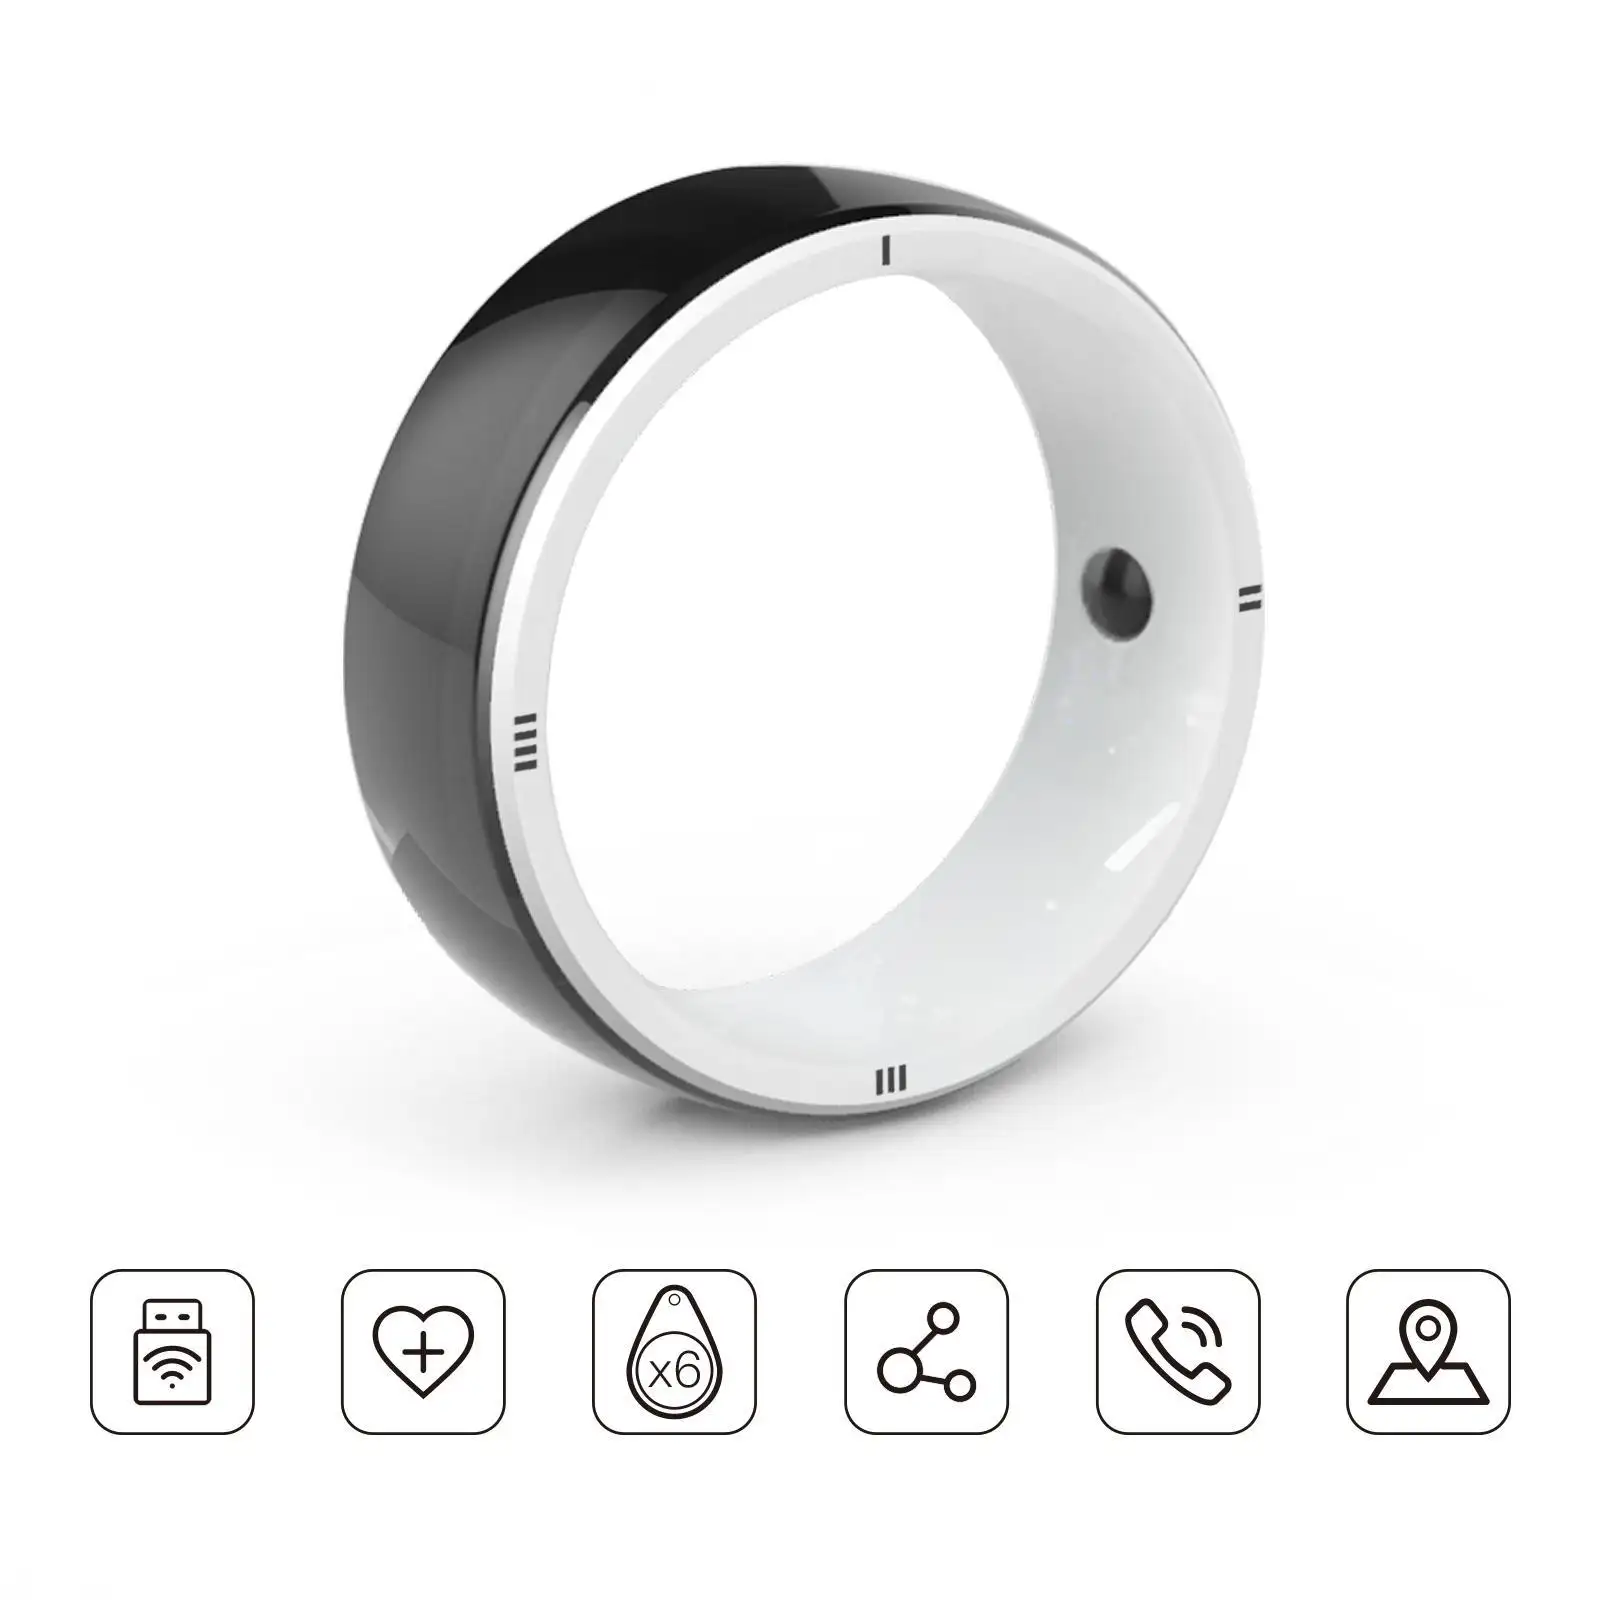 Anello intelligente JAKCOM R5 nuovo anello intelligente Super valore rispetto alla migliore protezione dello schermo mobile sotto la presa d'aria posteriore del lettore di cassette gpo 2000